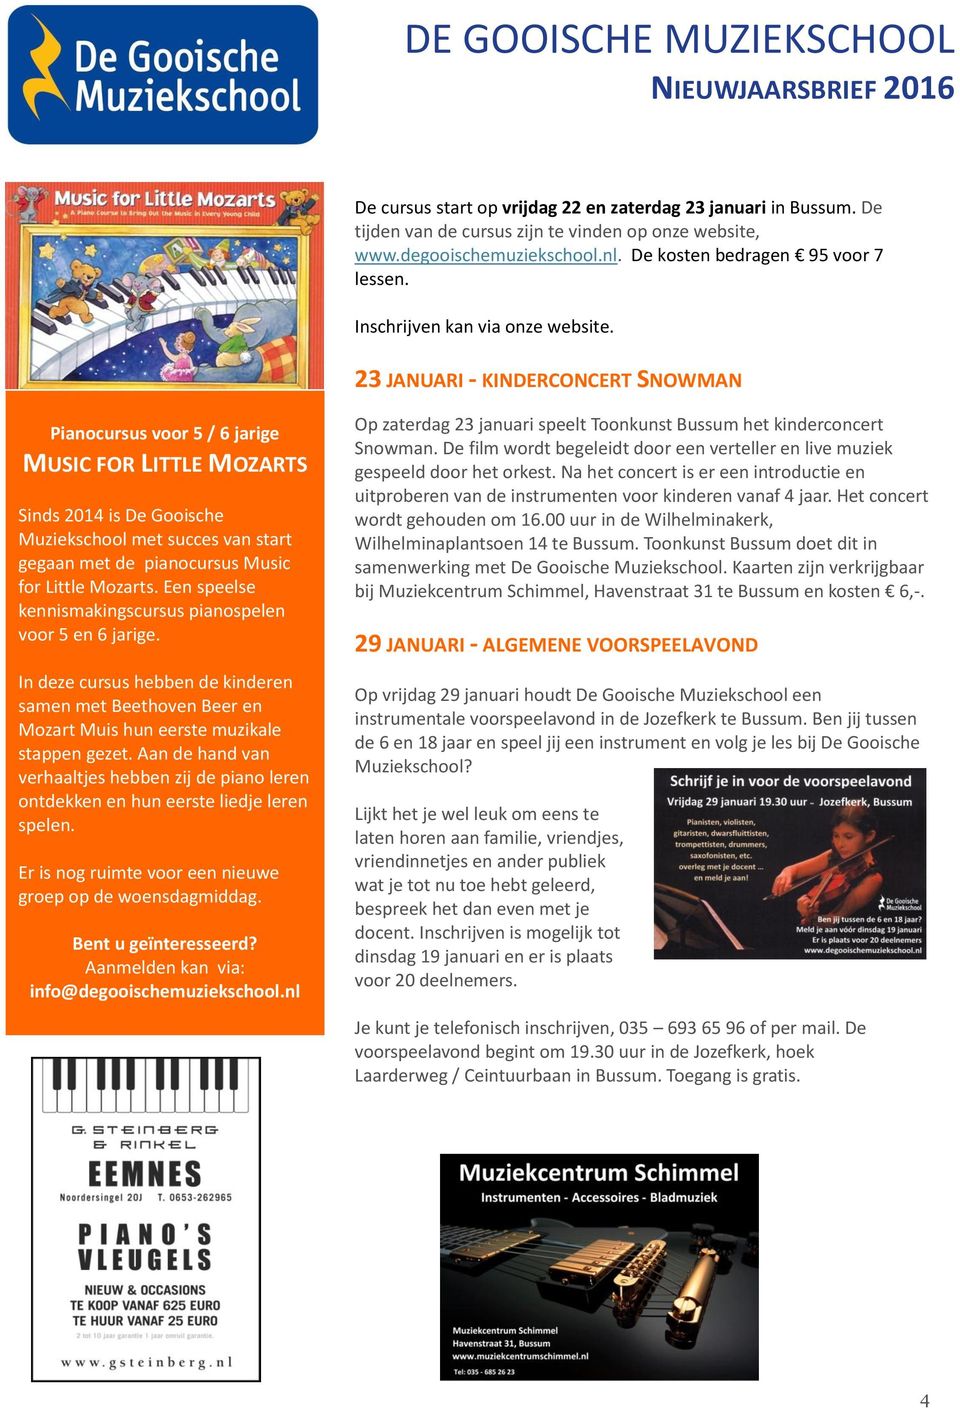 23 JANUARI - KINDERCONCERT SNOWMAN Pianocursus voor 5 / 6 jarige MUSIC FOR LITTLE MOZARTS Sinds 2014 is De Gooische Muziekschool met succes van start gegaan met de pianocursus Music for Little